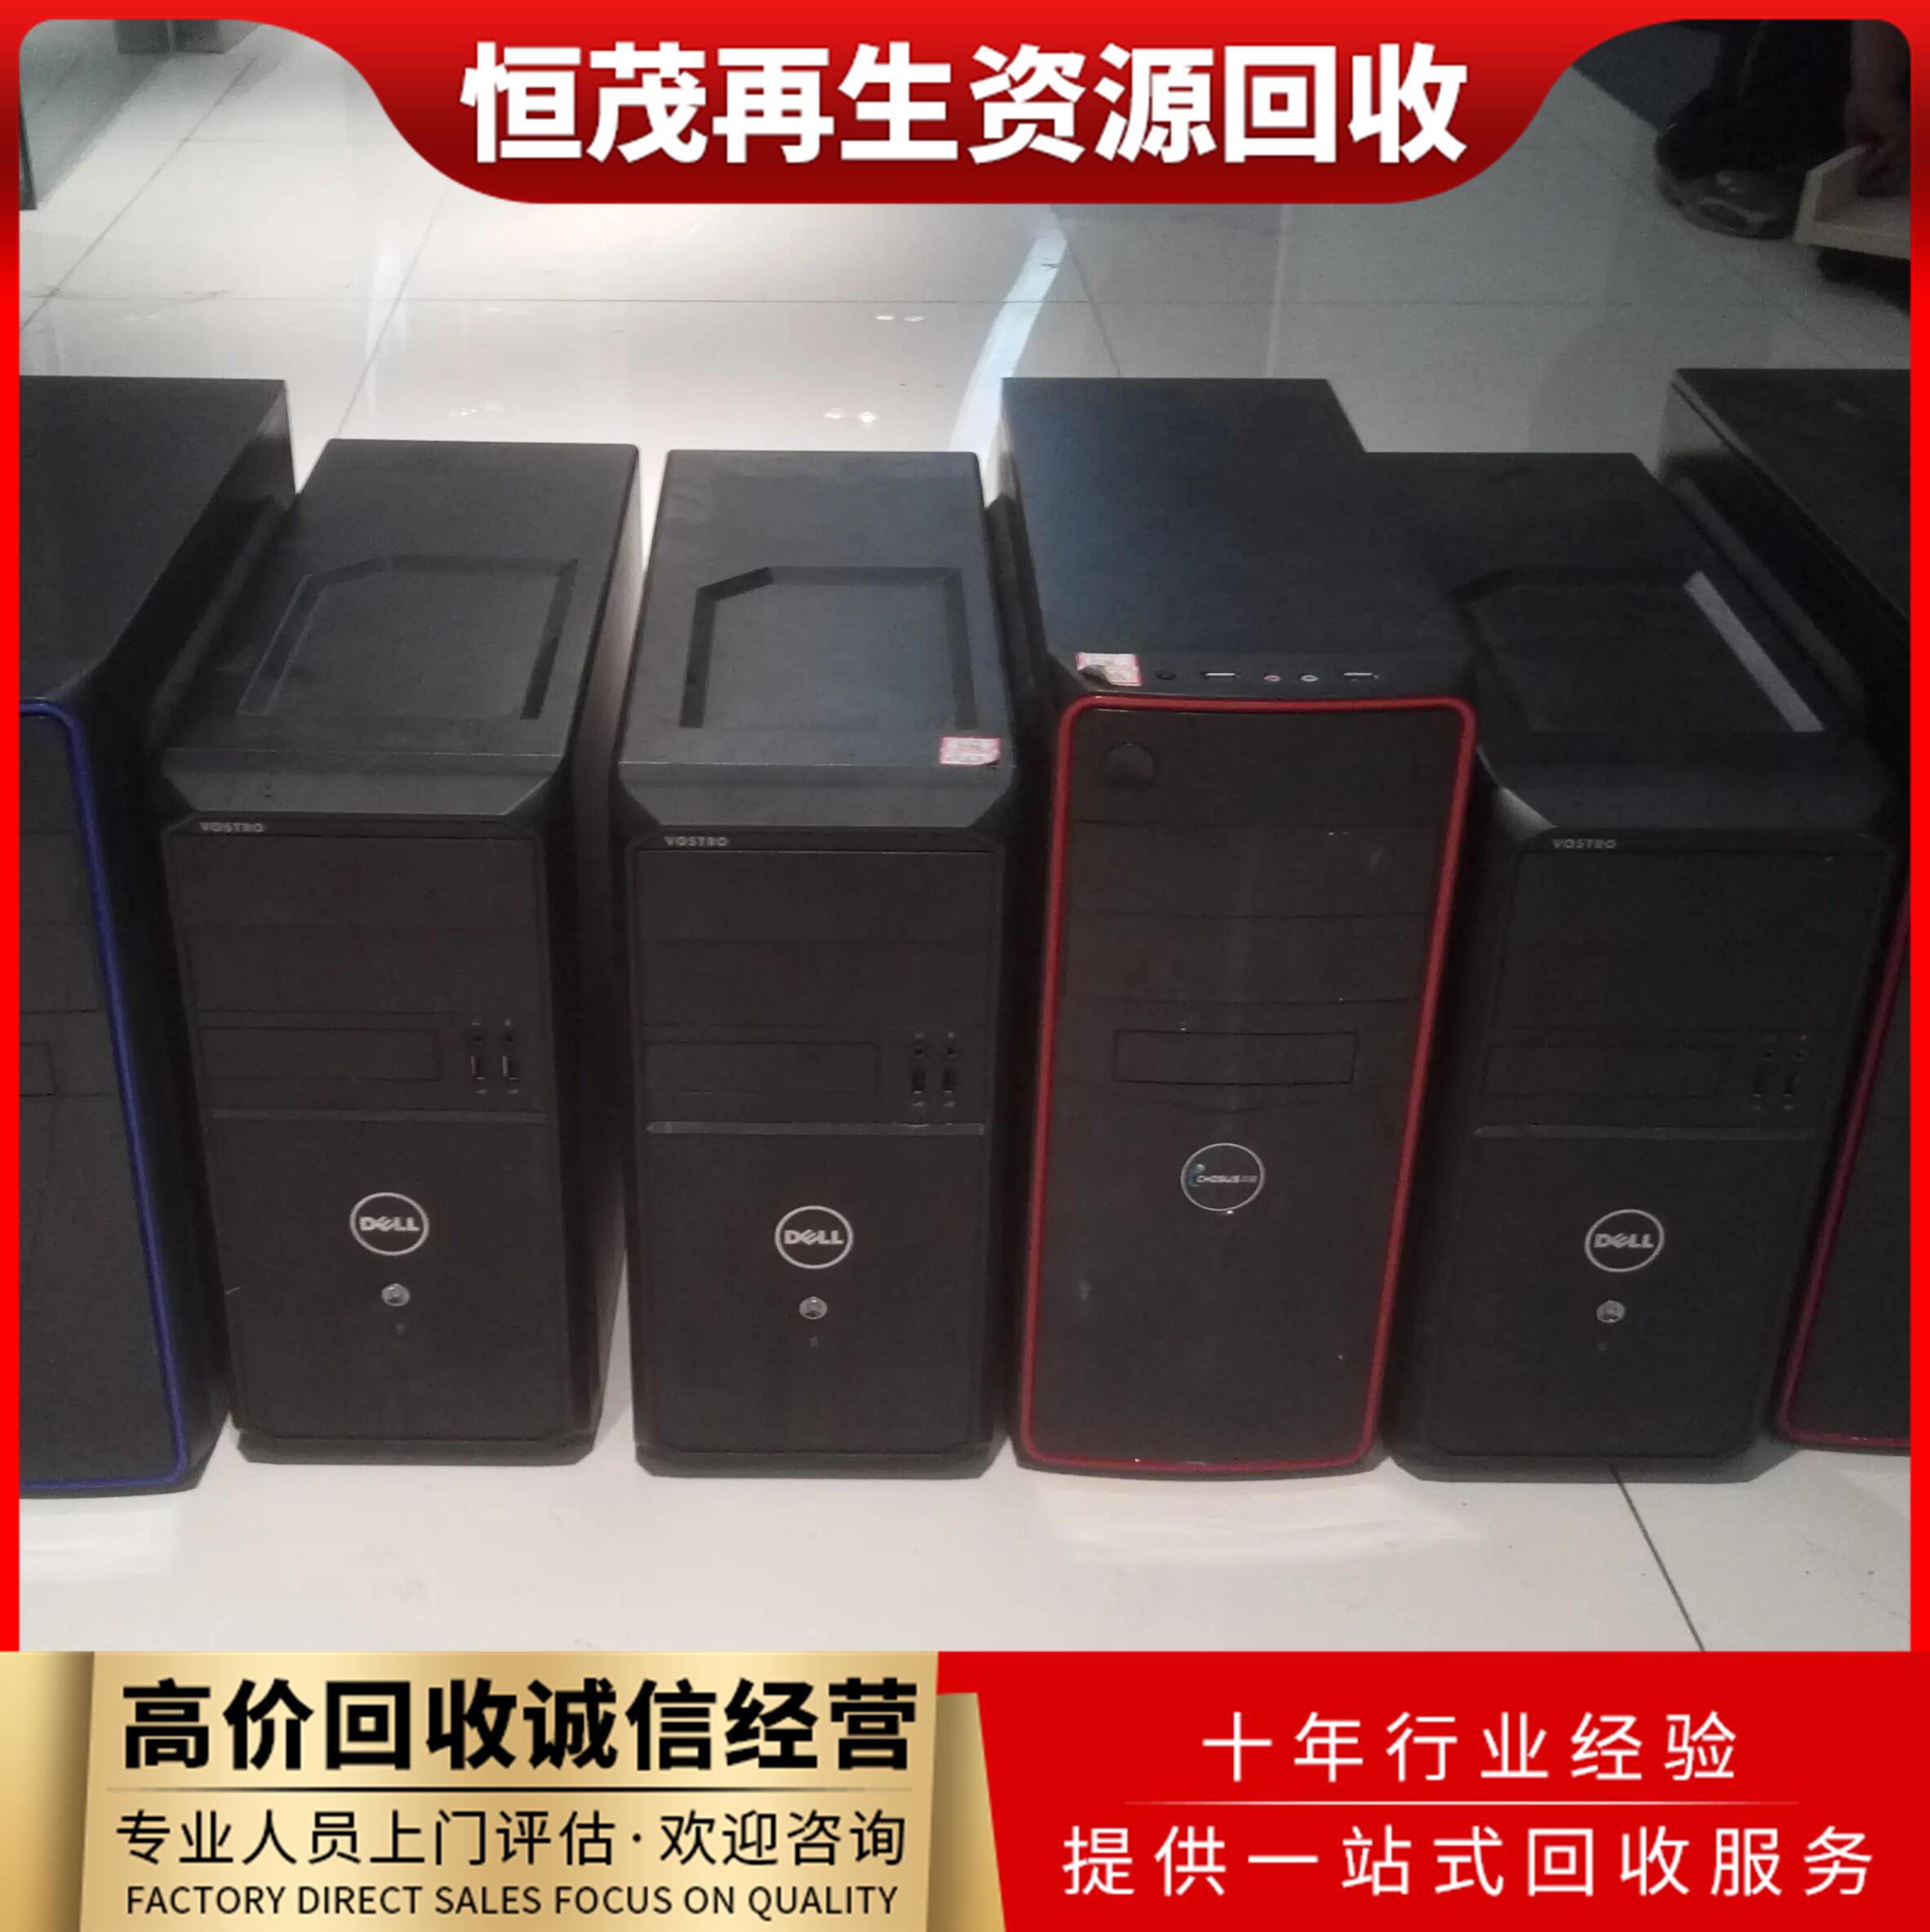 二手屏风工位回收,惠州博罗电脑回收厂家渠道准系统